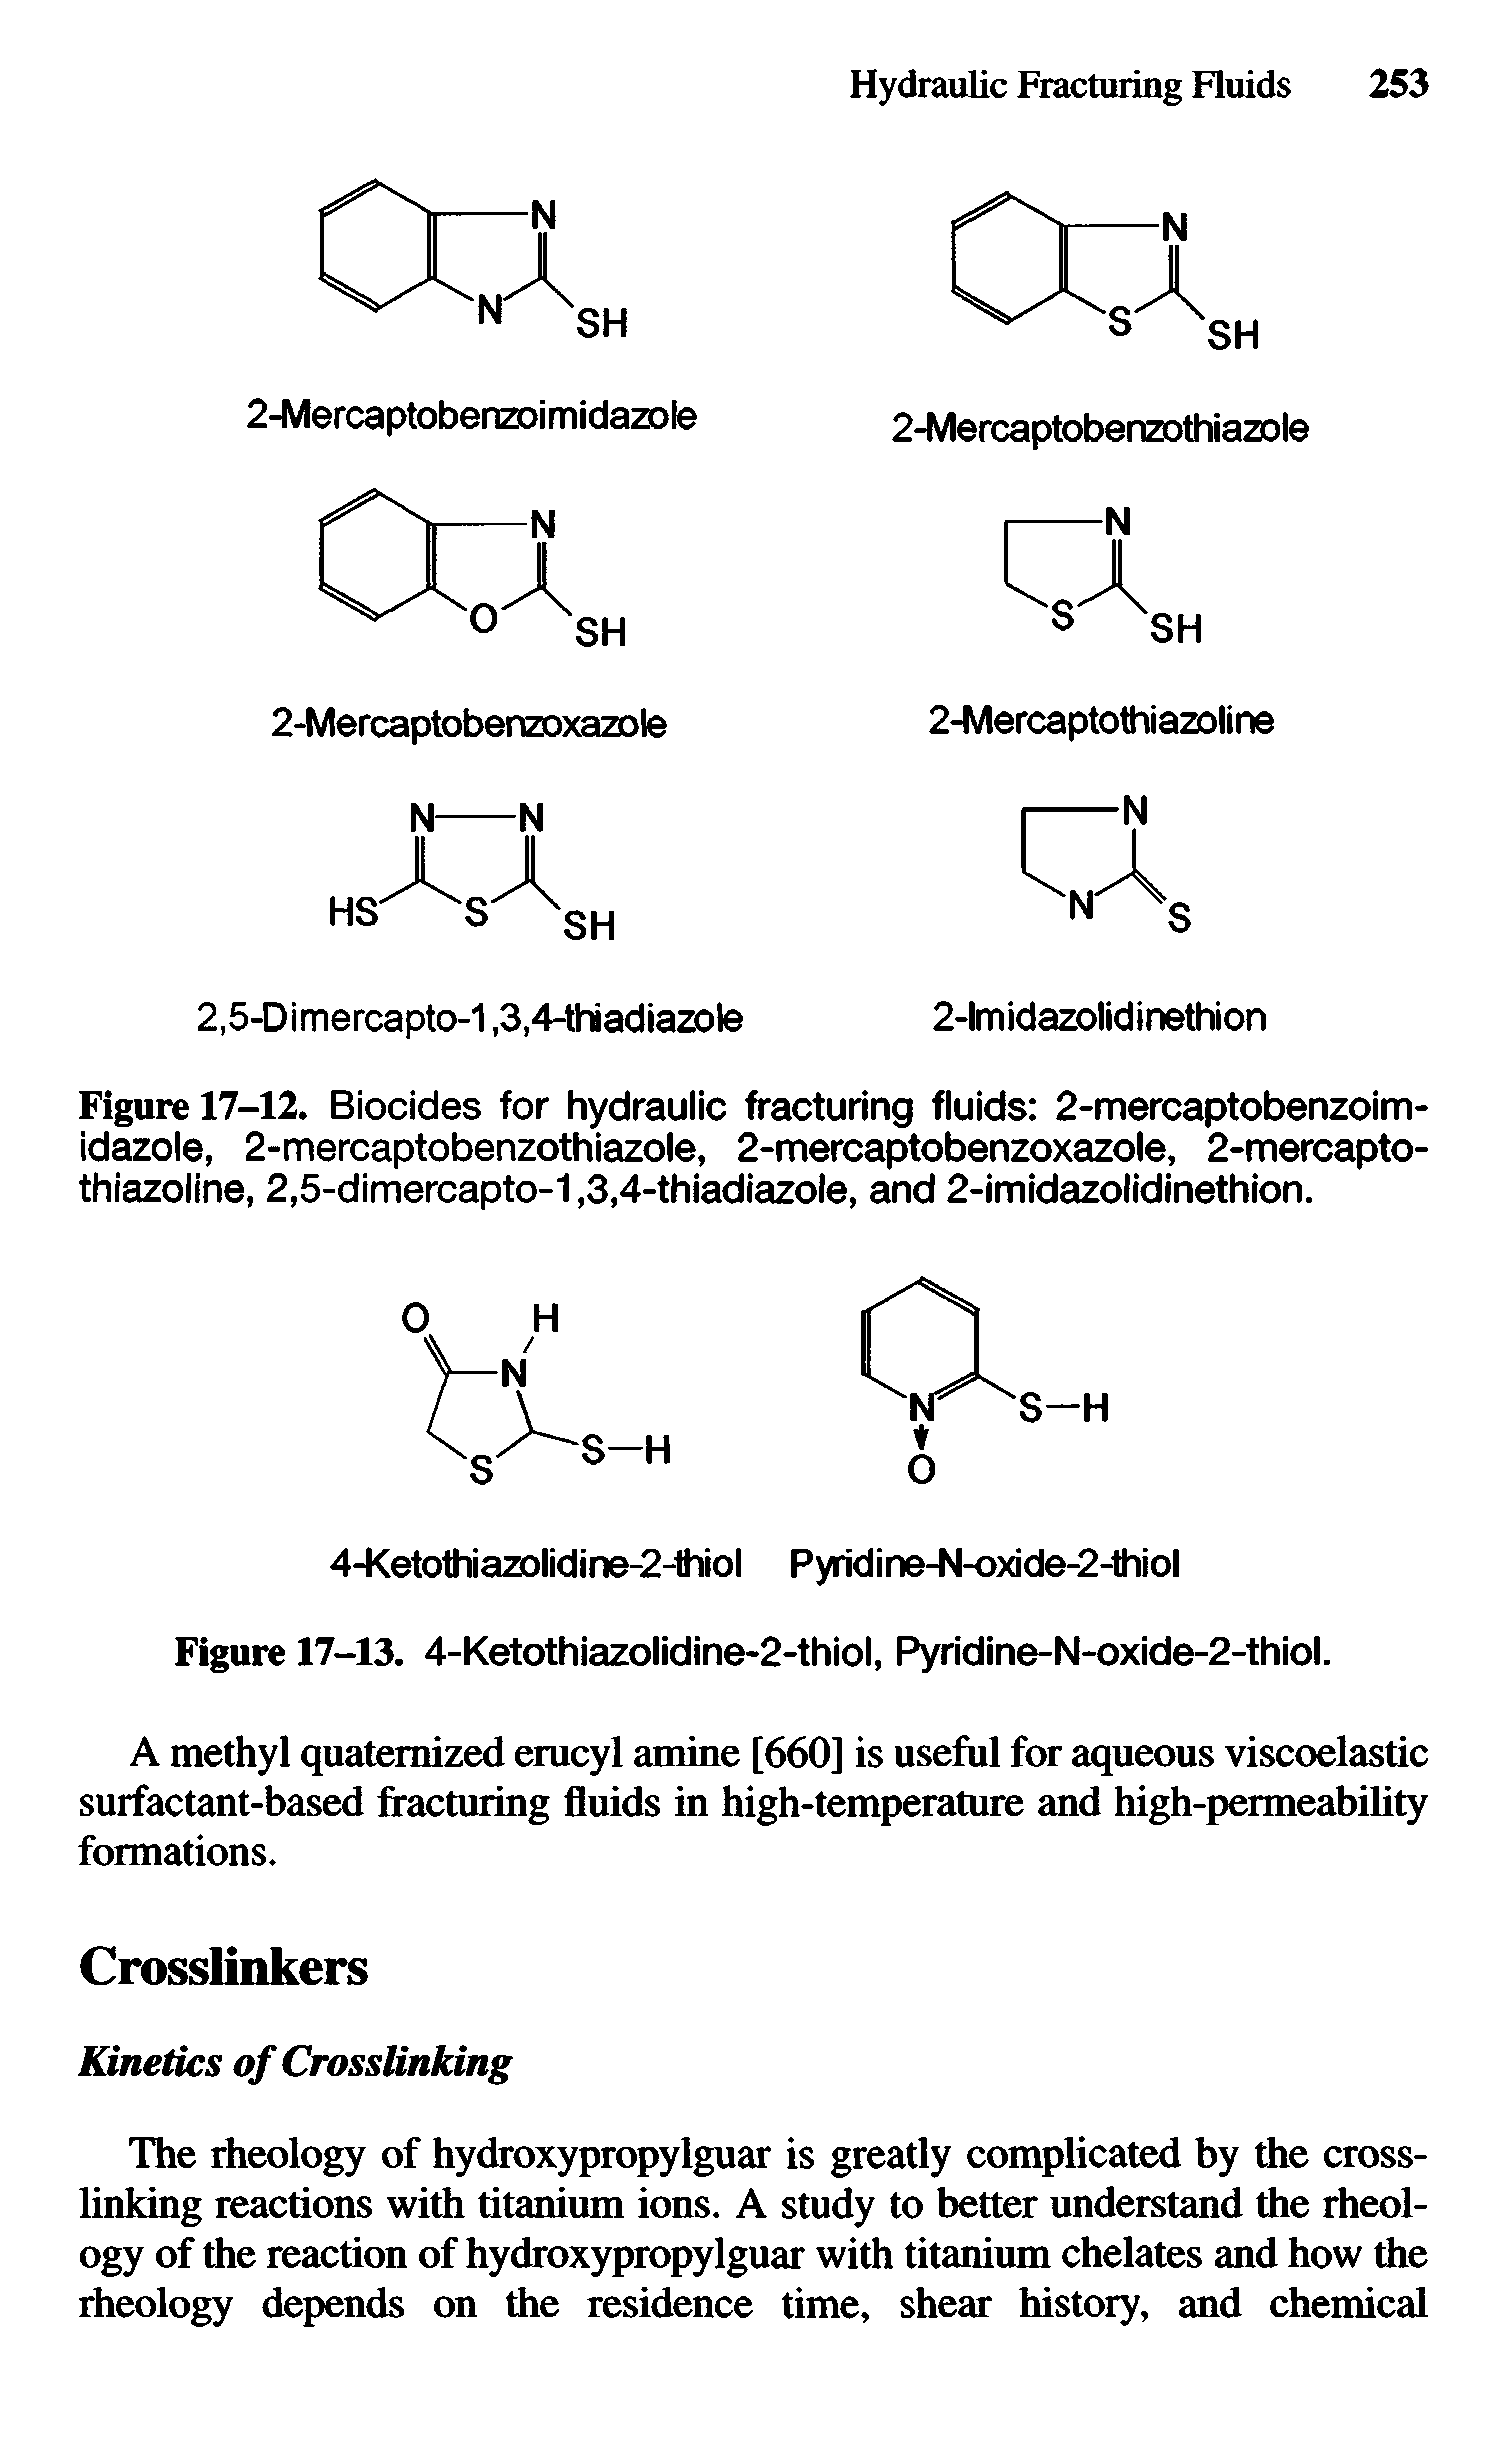 Figure 17-12. Biocides for hydraulic fracturing fluids 2-mercaptobenzoim-idazole, 2-mercaptobenzothiazole, 2-mercaptobenzoxazole, 2-mercapto-thiazoline, 2,5-dimercapto-1,3,4-thiadiazole, and 2-imidazolidinethion.